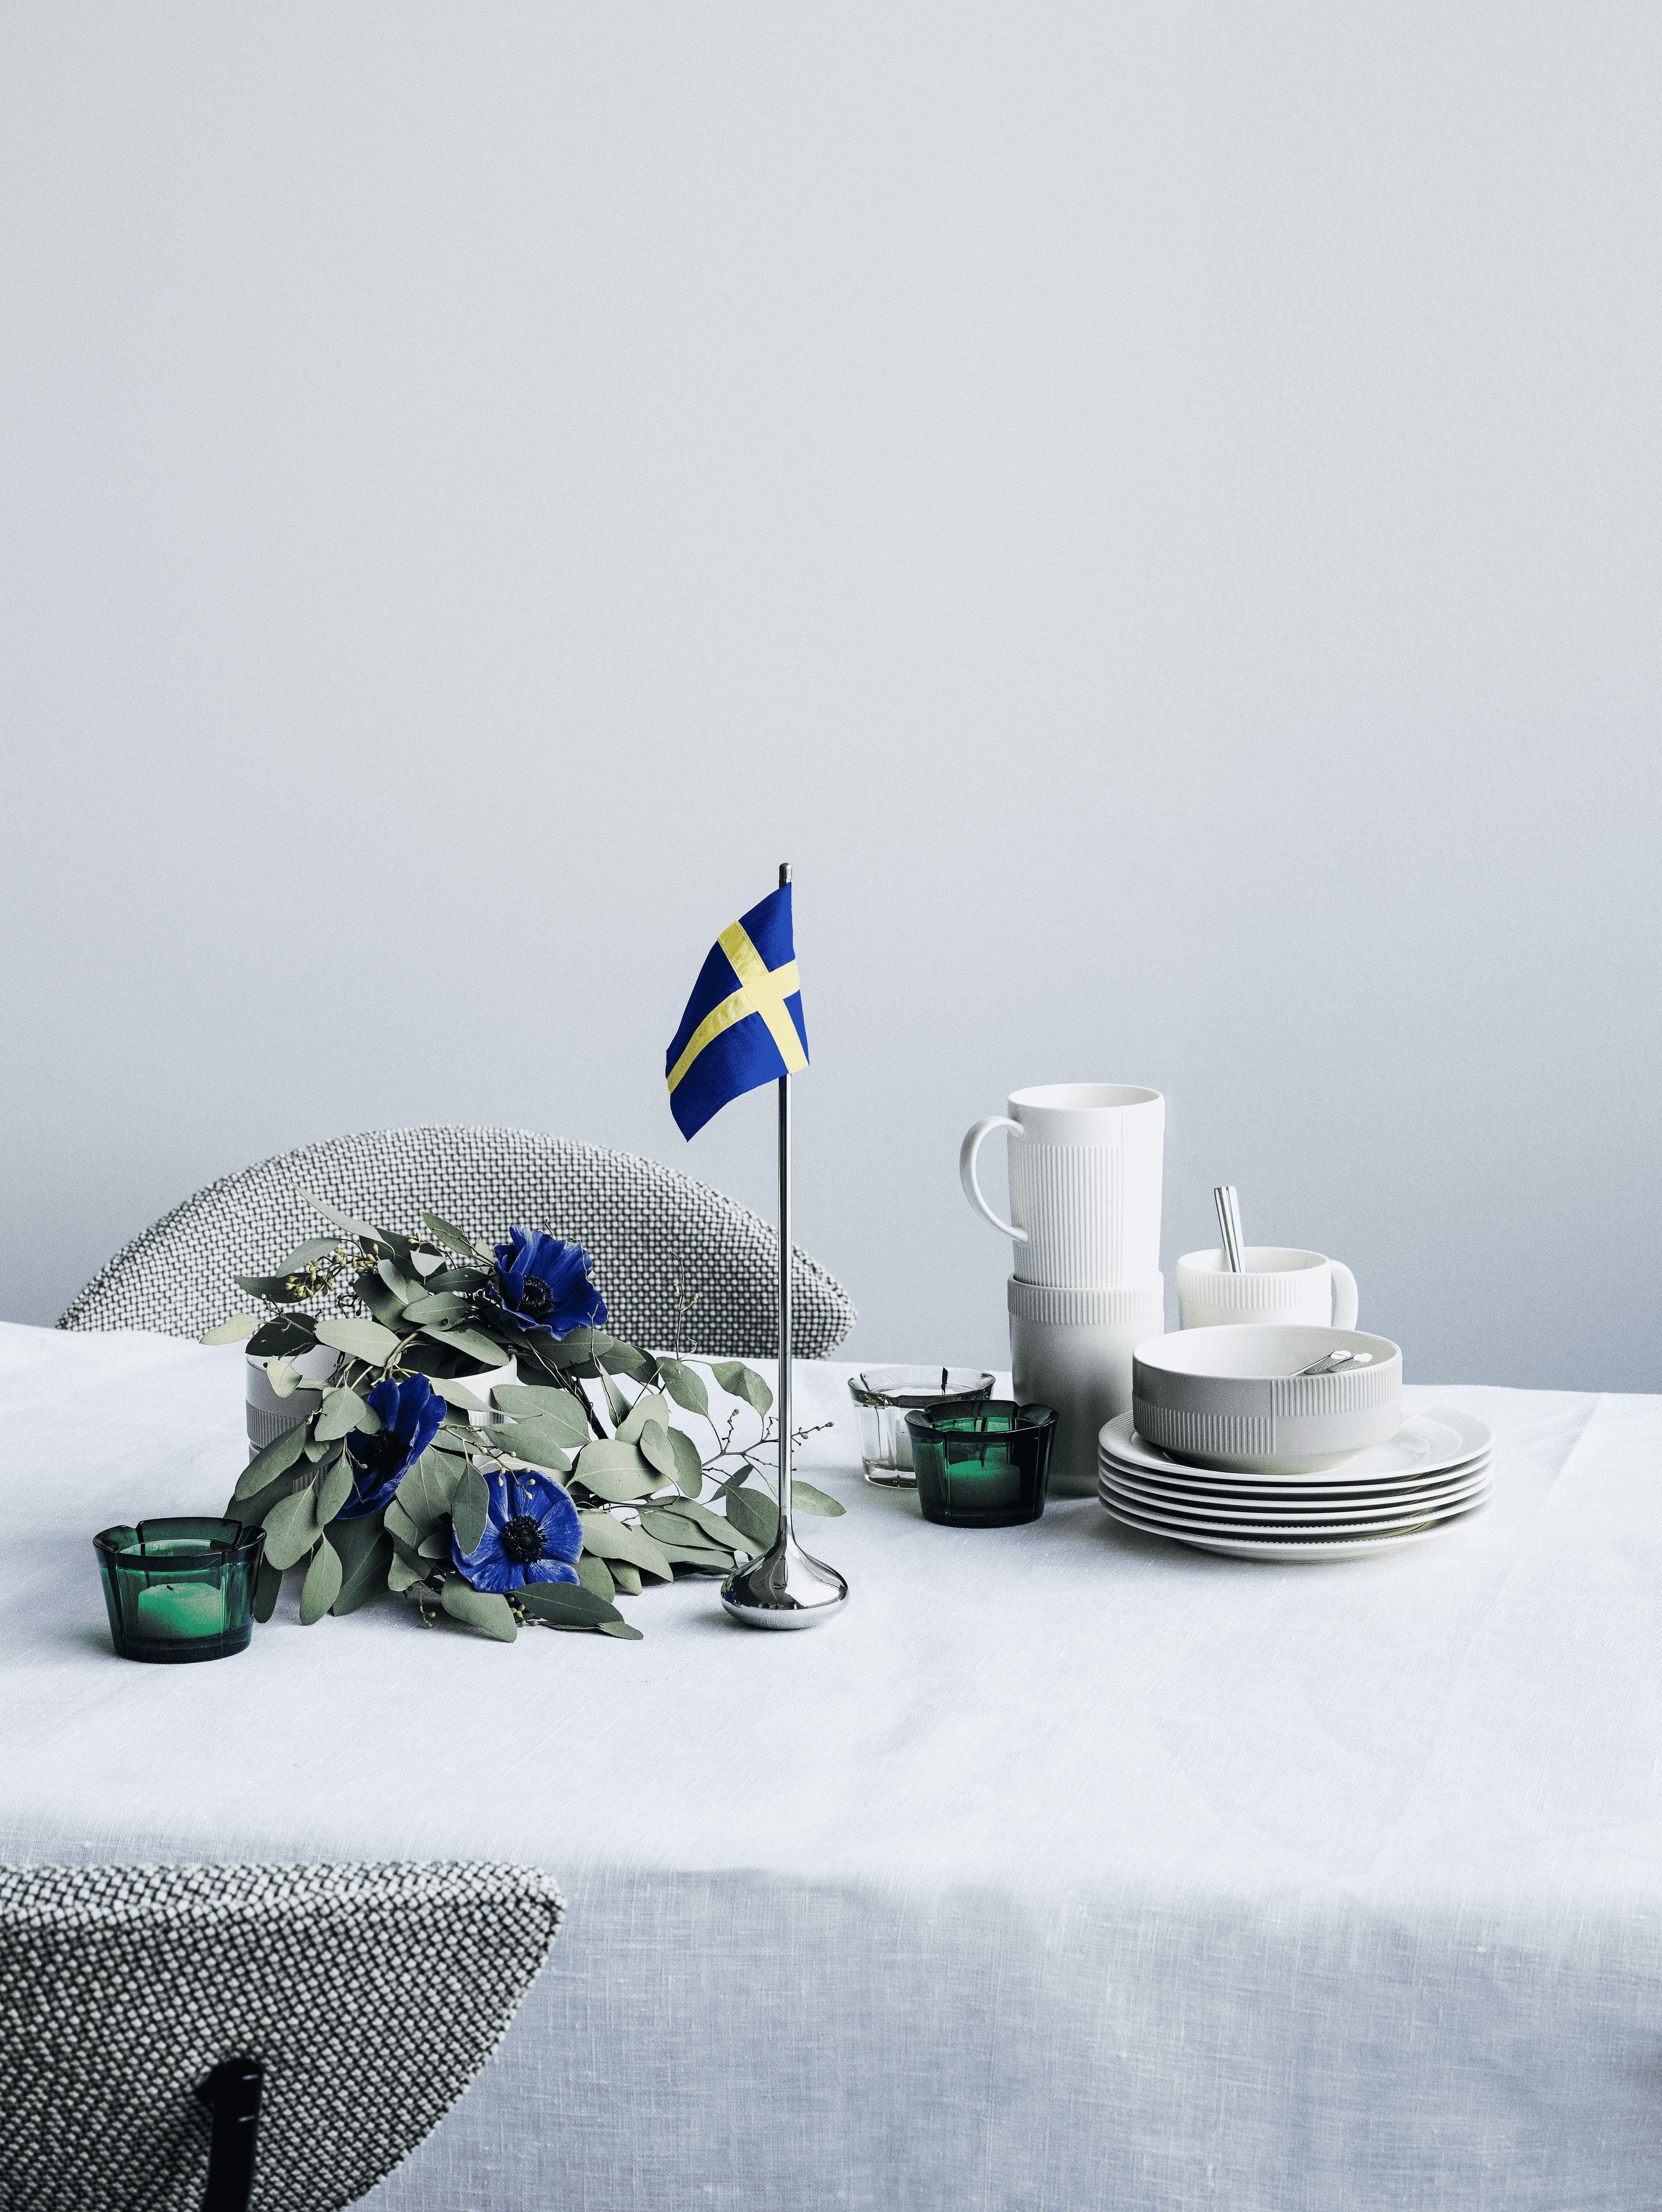 Bordflagg svensk H35